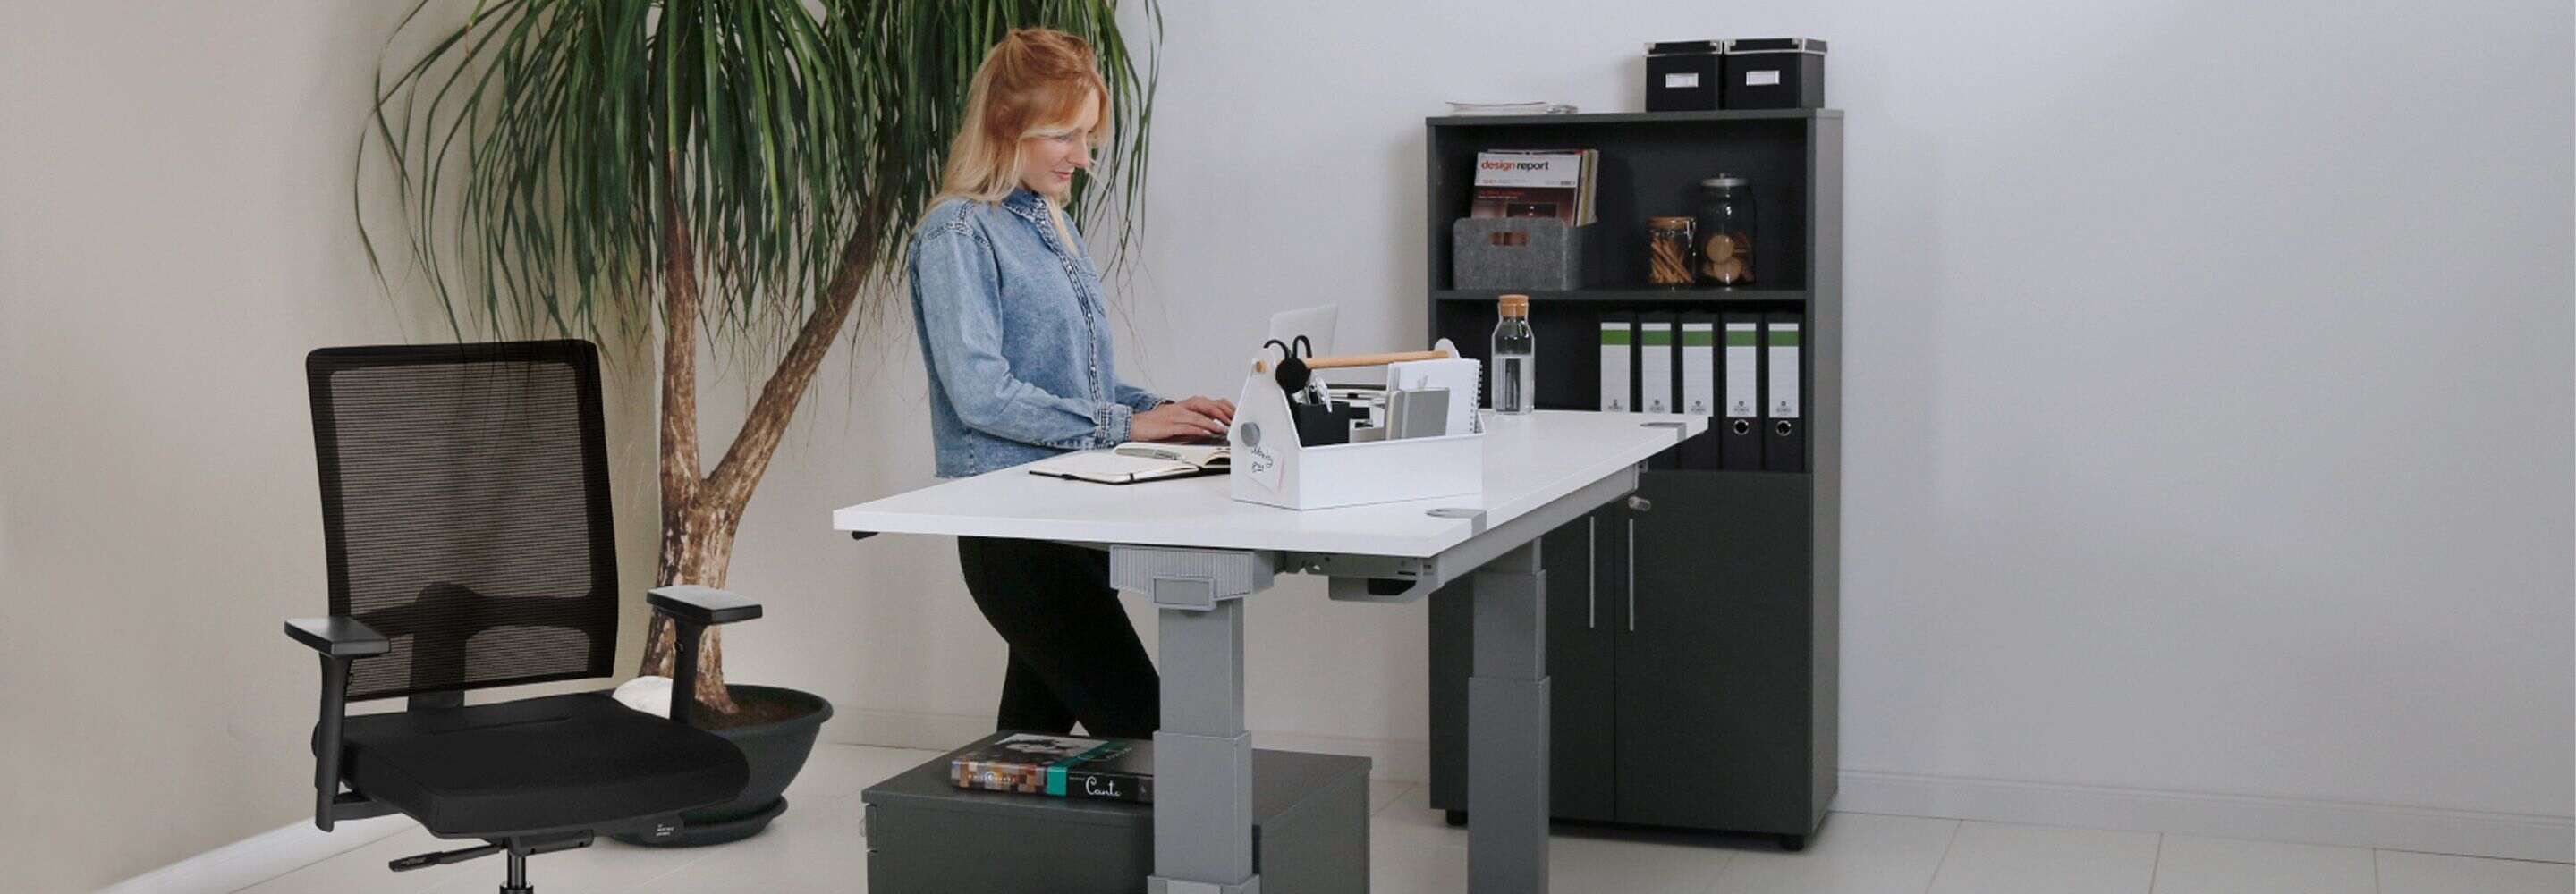 Chaise De Bureau Avec Filet Pour Le Soutien Du Dos Et Ordinateur Portable  Sur Table